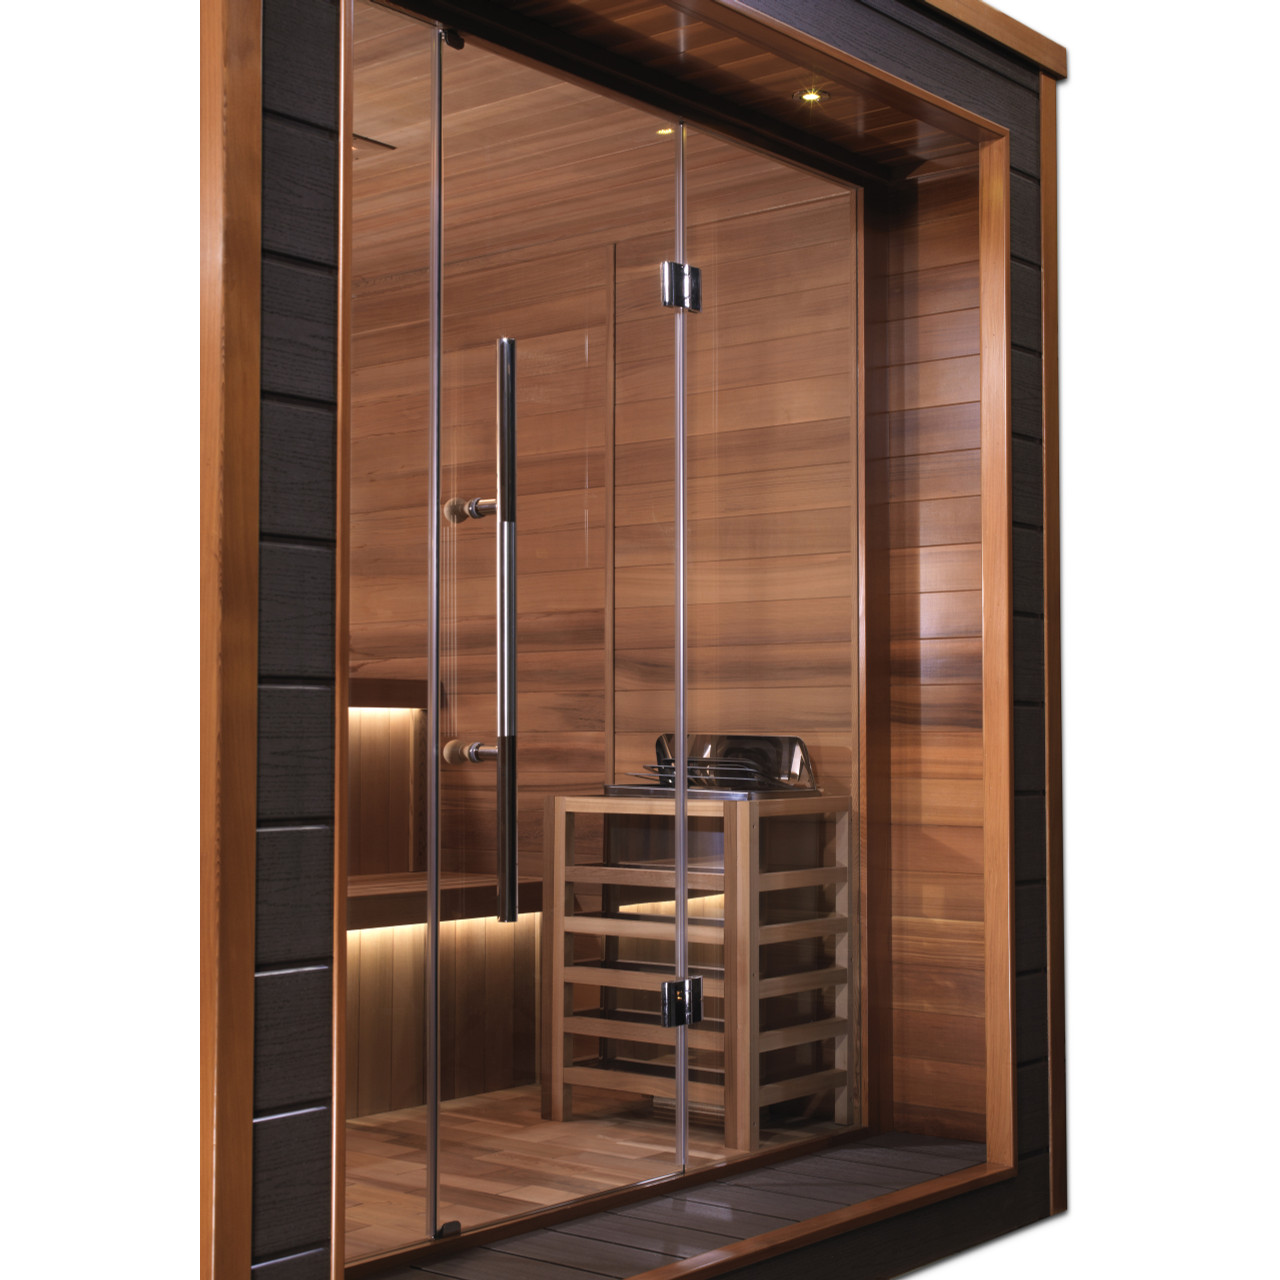 Golden Designs Bergen 6 Person Outdoor-Indoor Traditional Steam Sauna